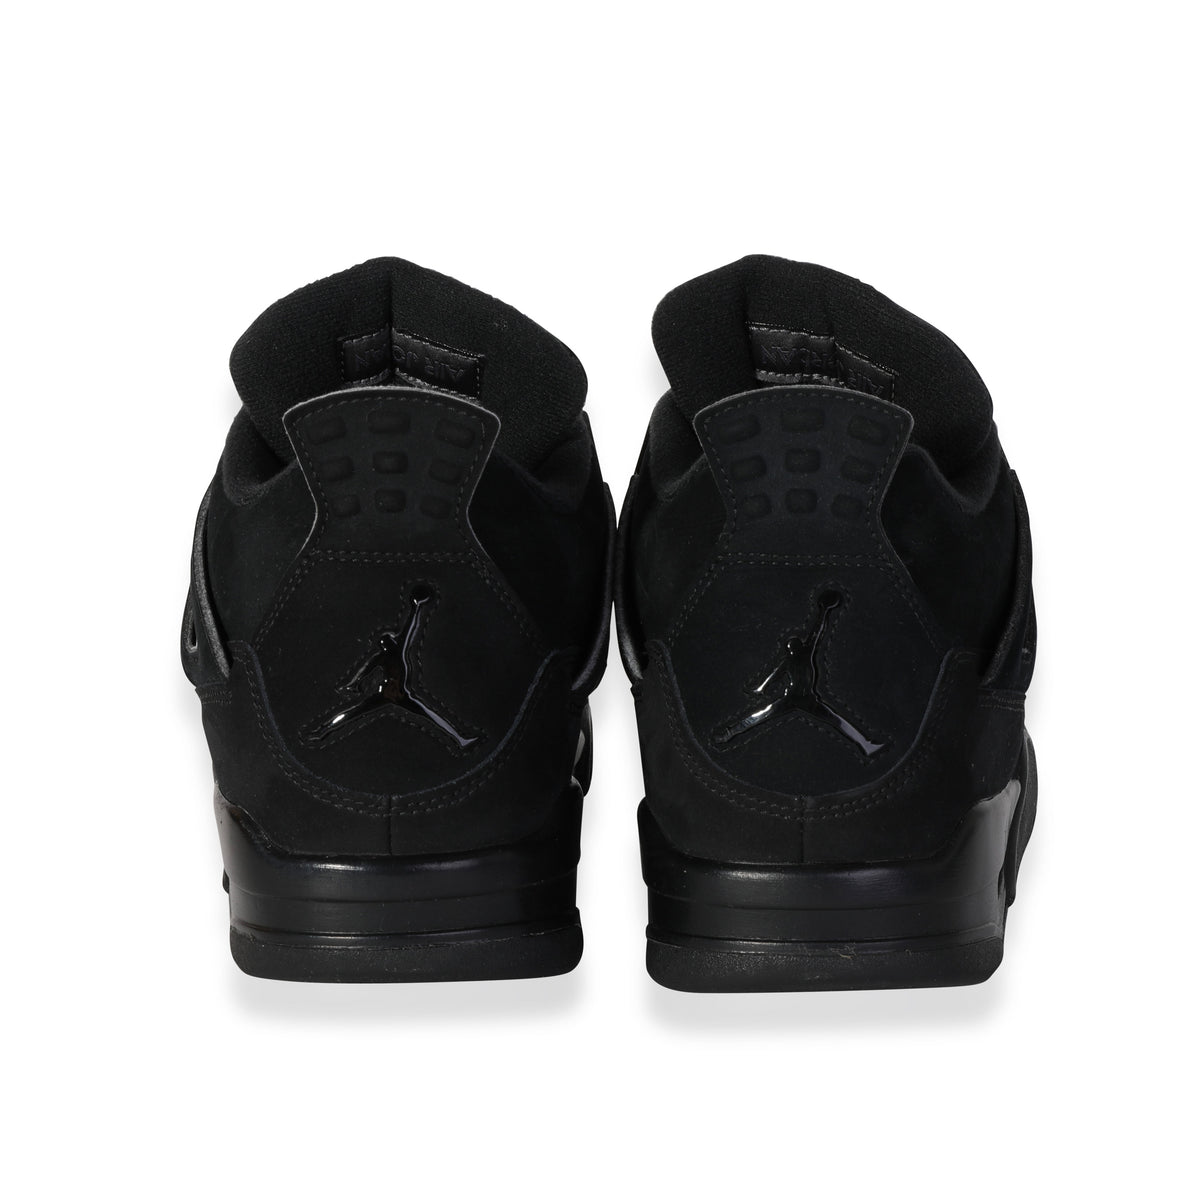 New Air Jordan 4 Black Cat 2020 Size 10 Rare Retro Authentic